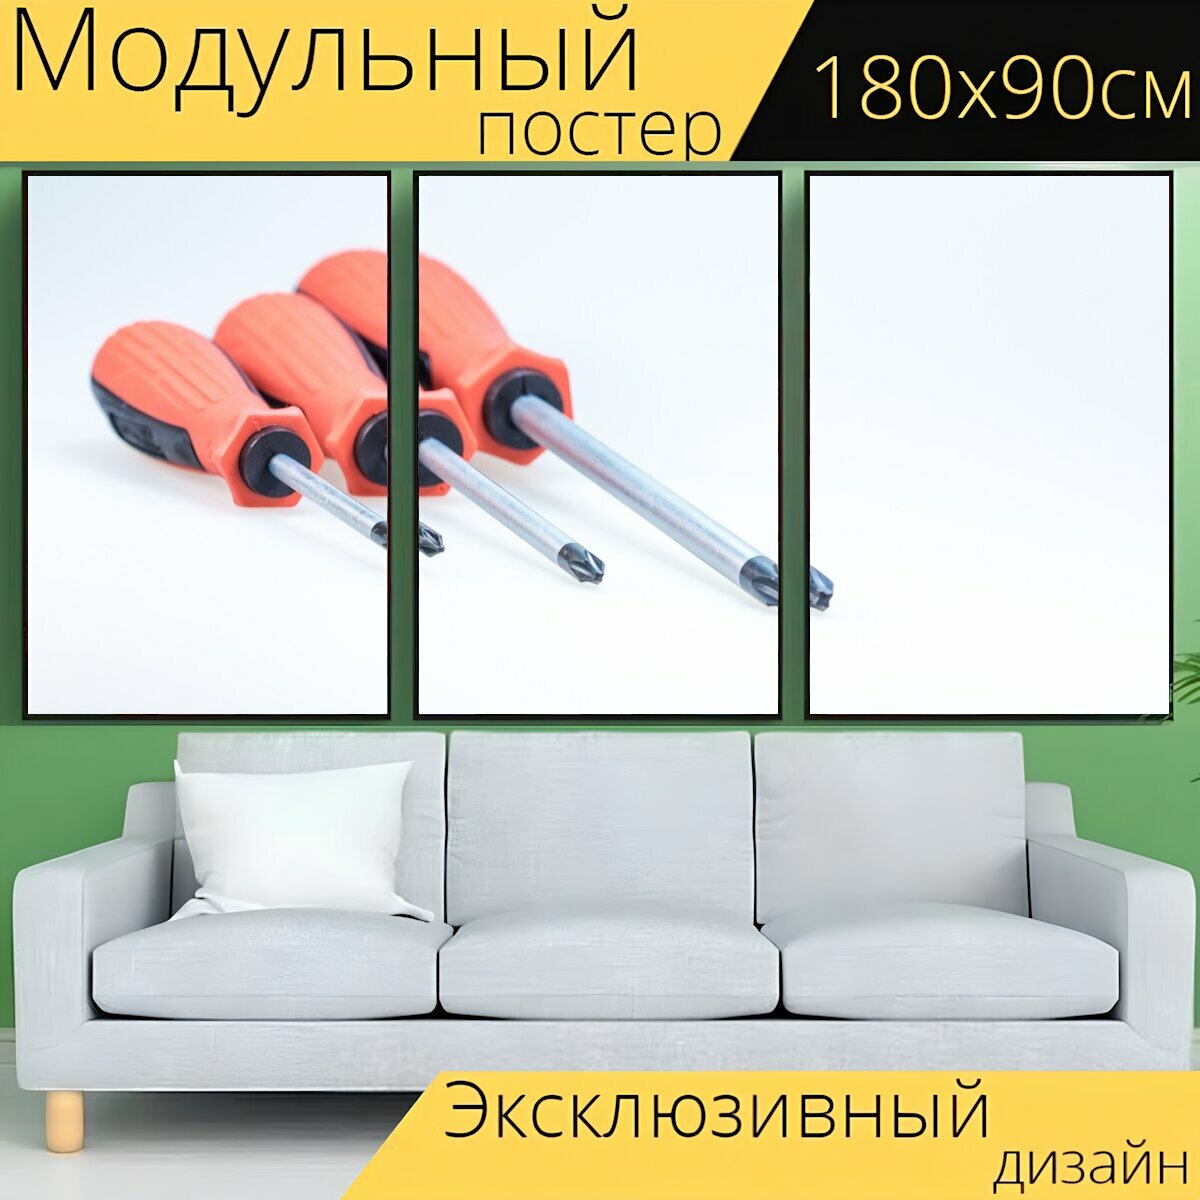 Модульный постер "Отвертка, орудие труда, ремесло" 180 x 90 см. для интерьера